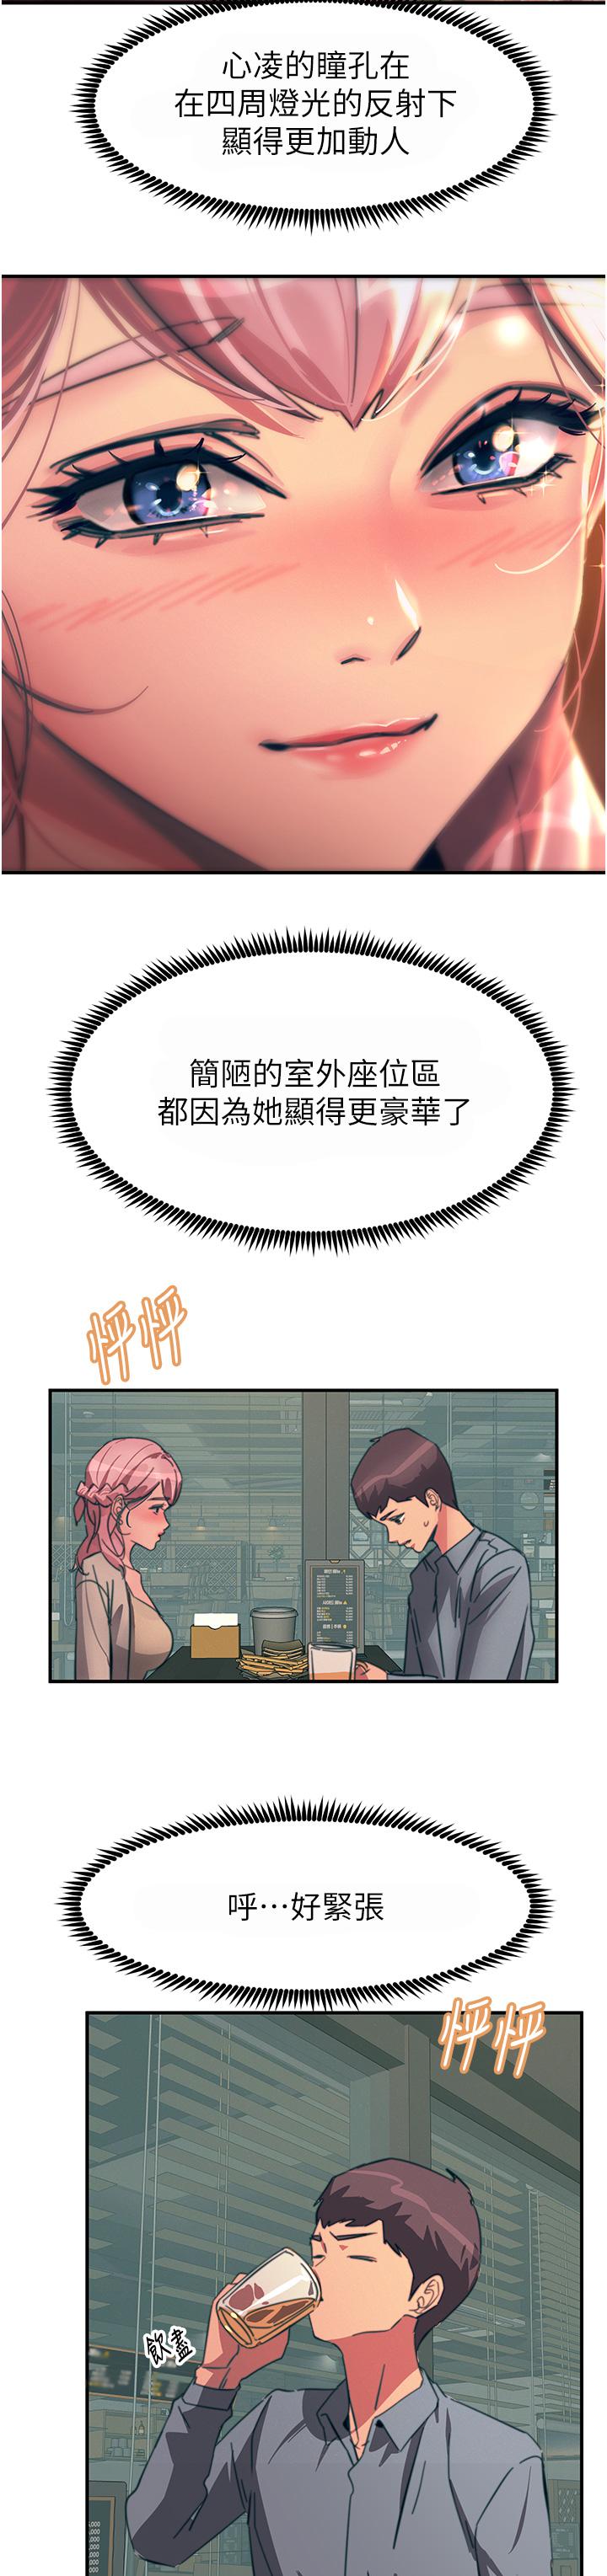 韩国污漫画 觸電大師 第69话-根治阴气的方法 39